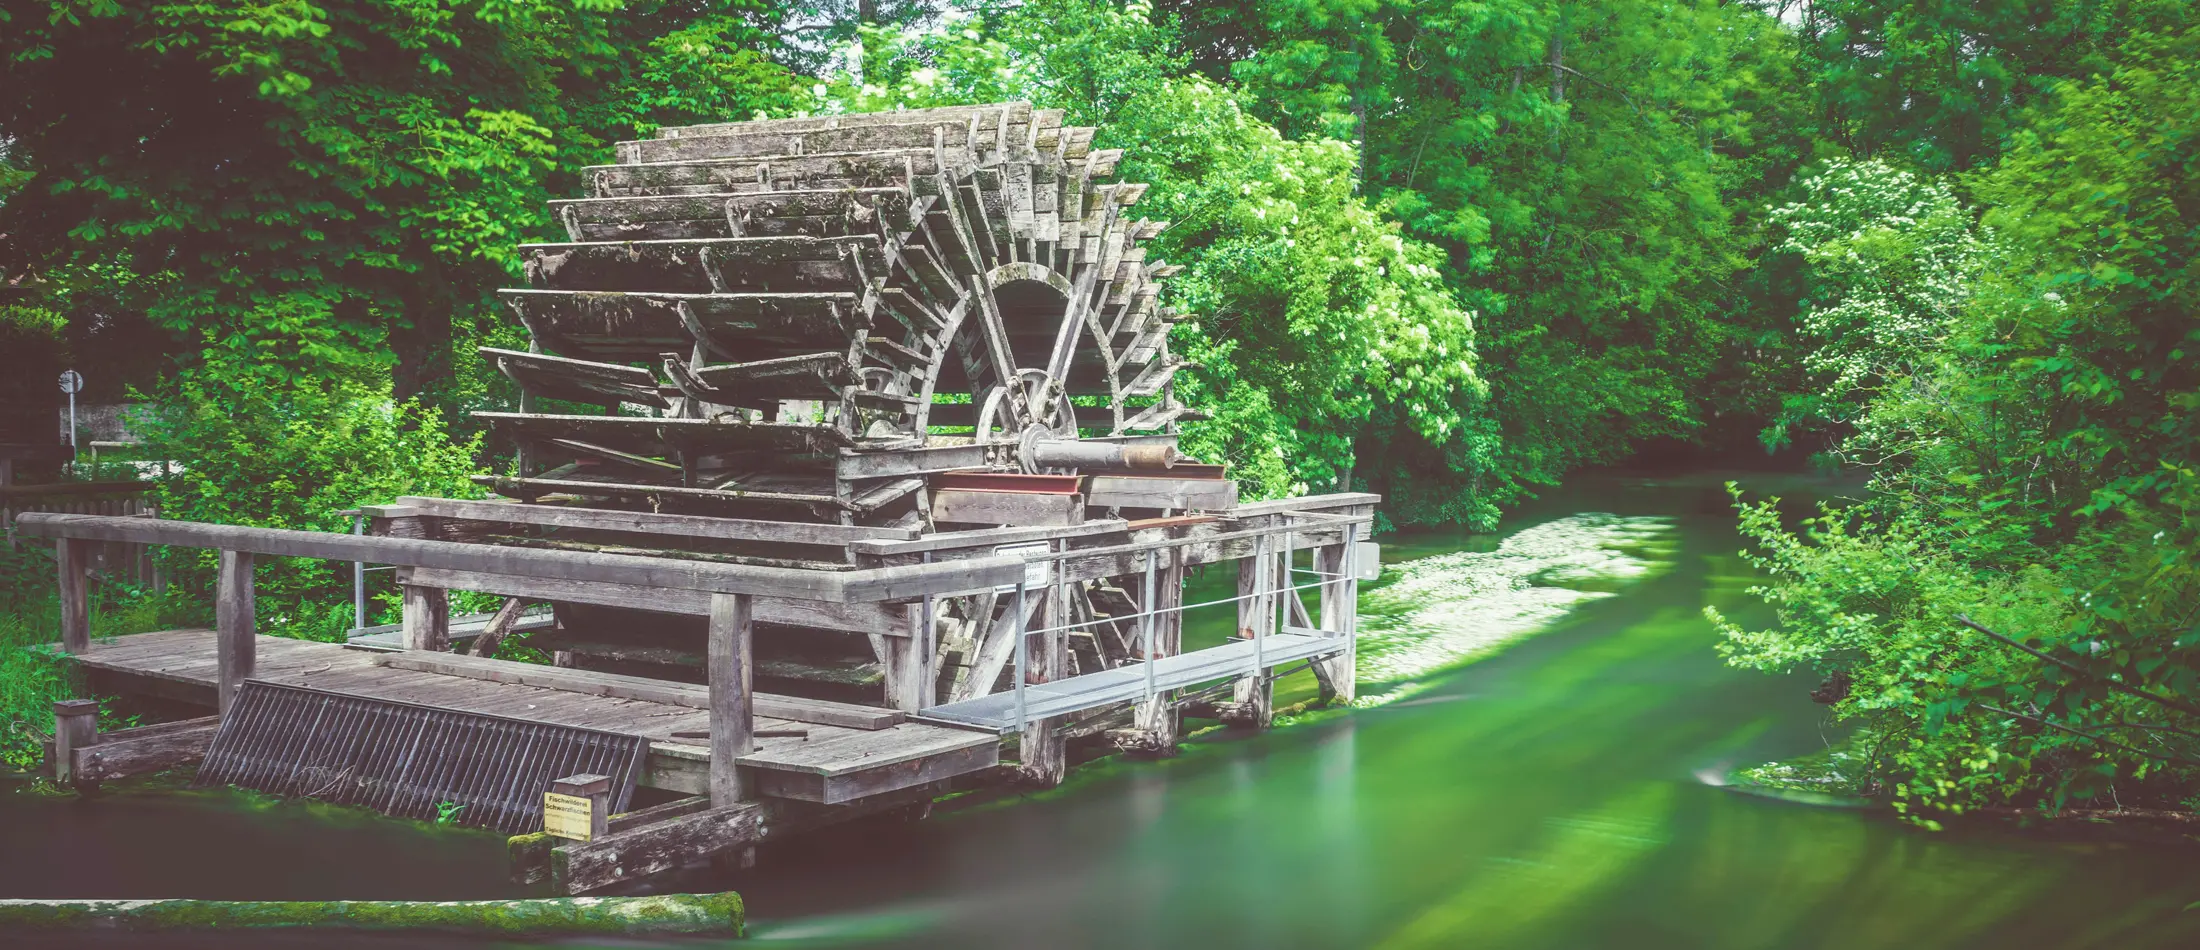 Bild vom Triebwerk einer alten Wassermühle in Gauting